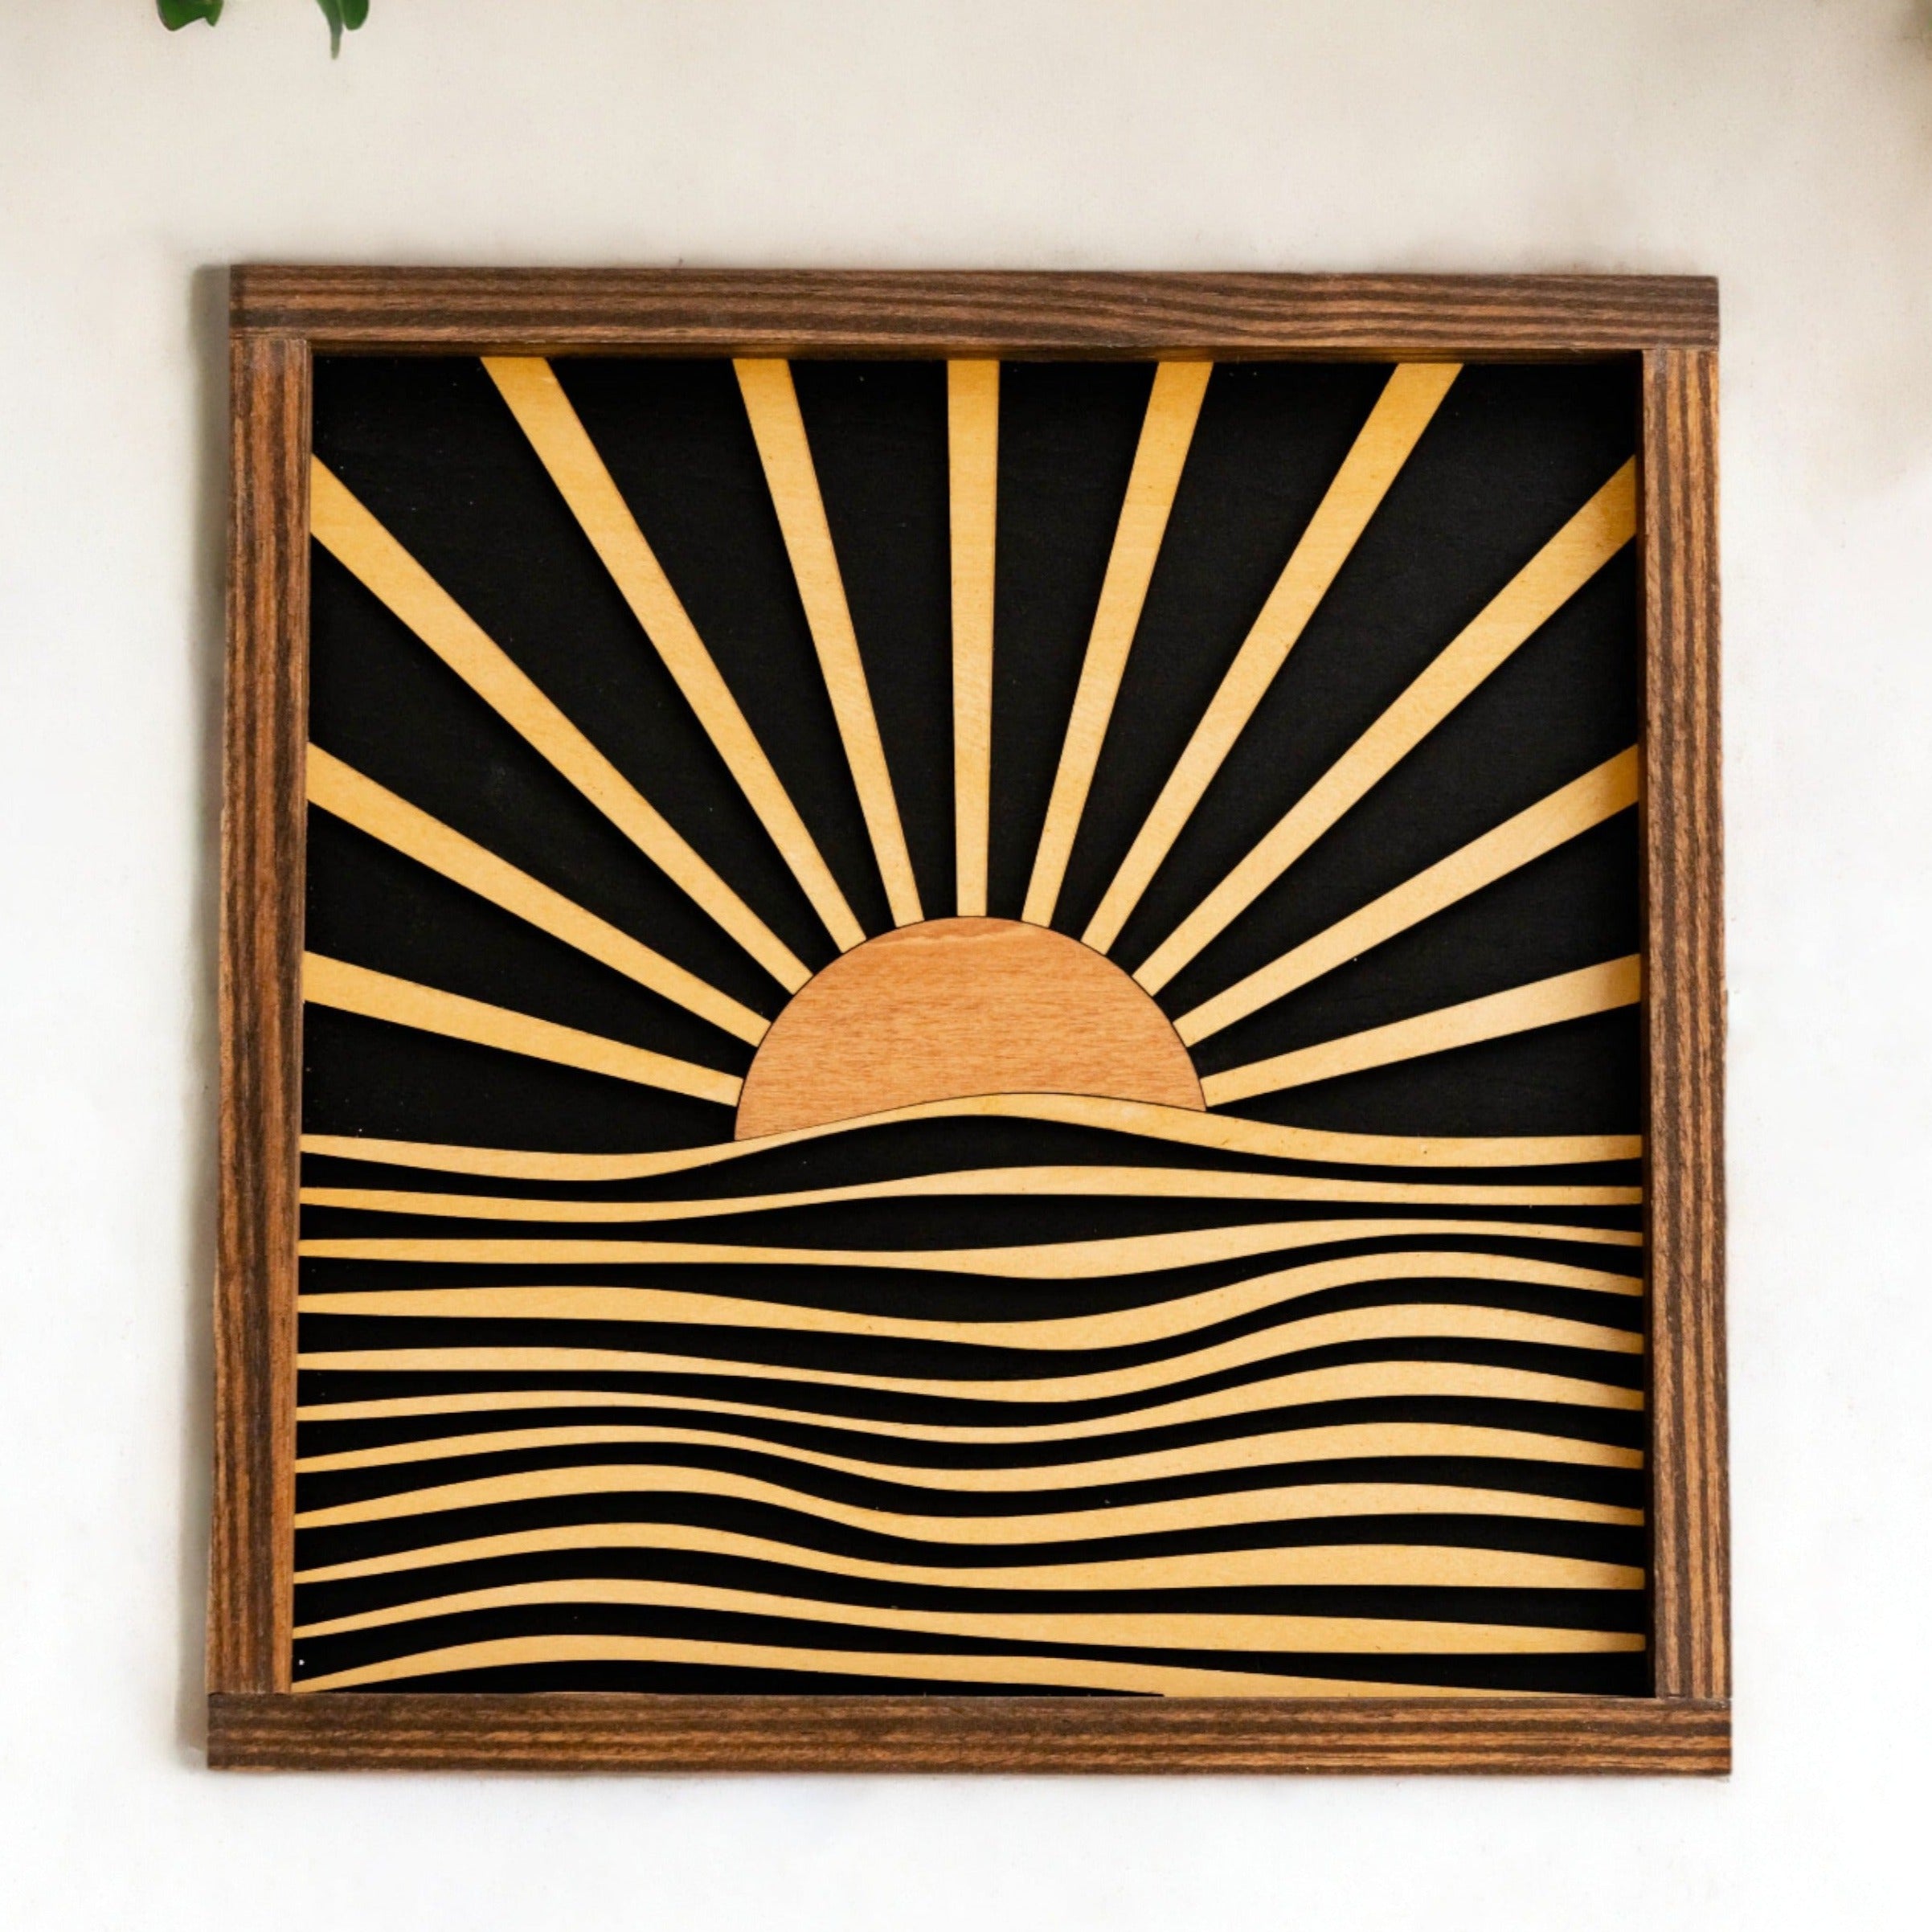 Handcrafted Boho Sunburst Wood Art for Vibrant Home Decor